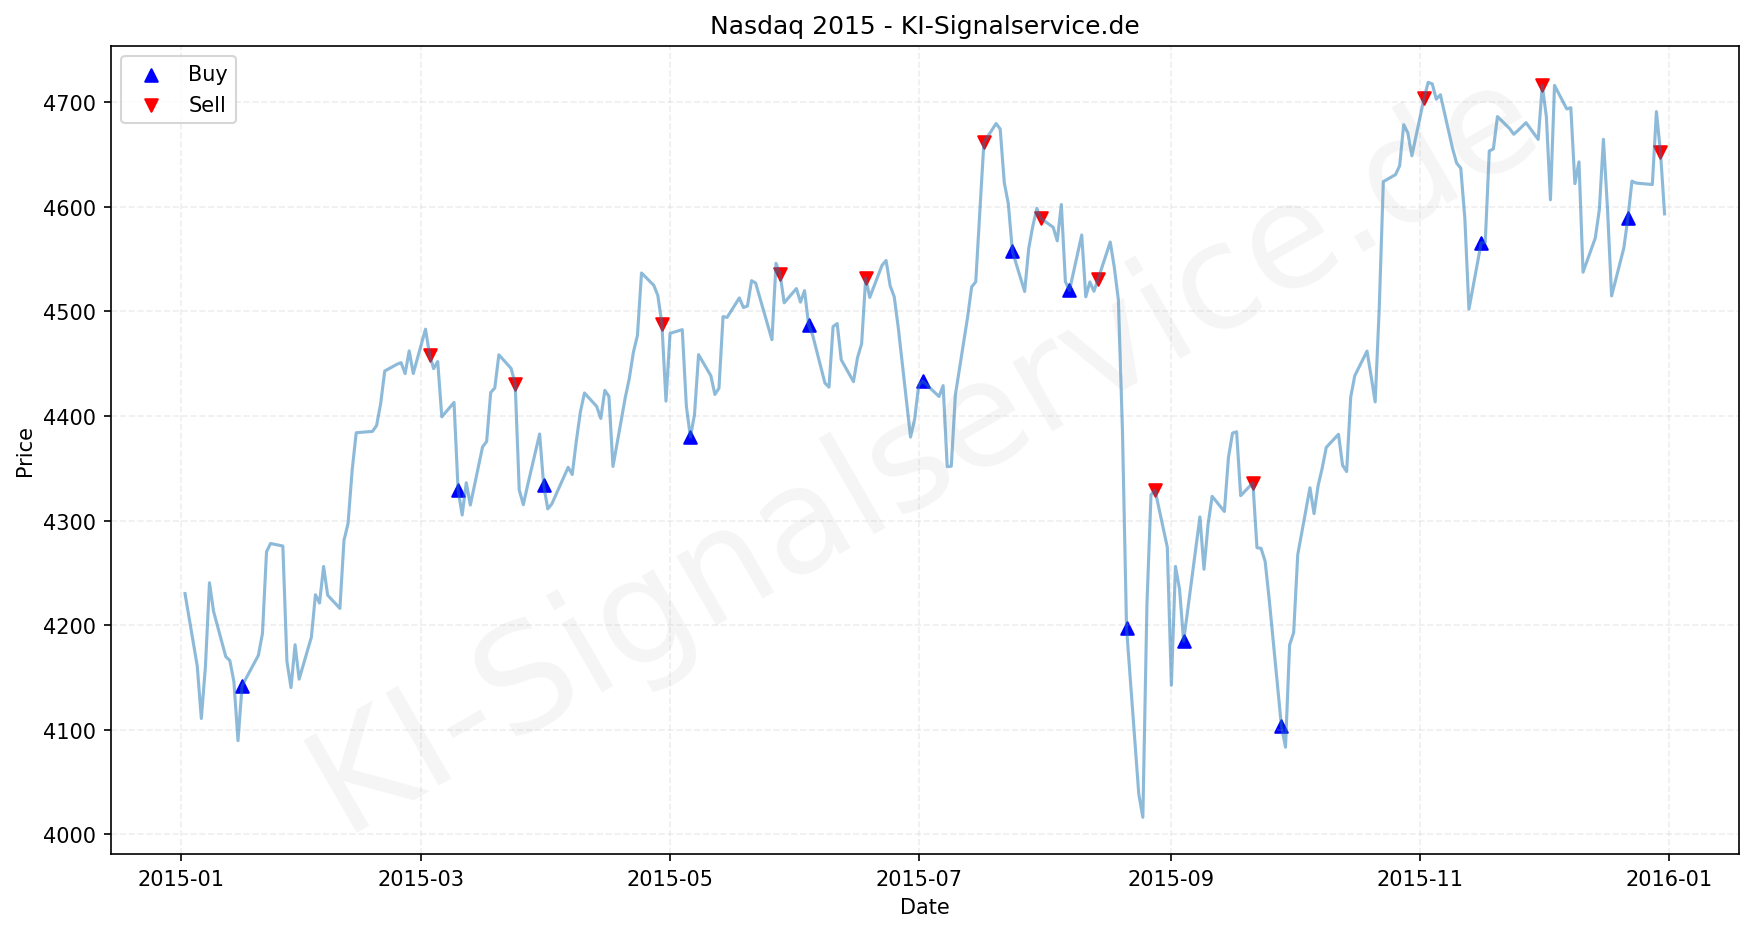 NADAQ Index Performance Chart - KI Tradingsignale 2015